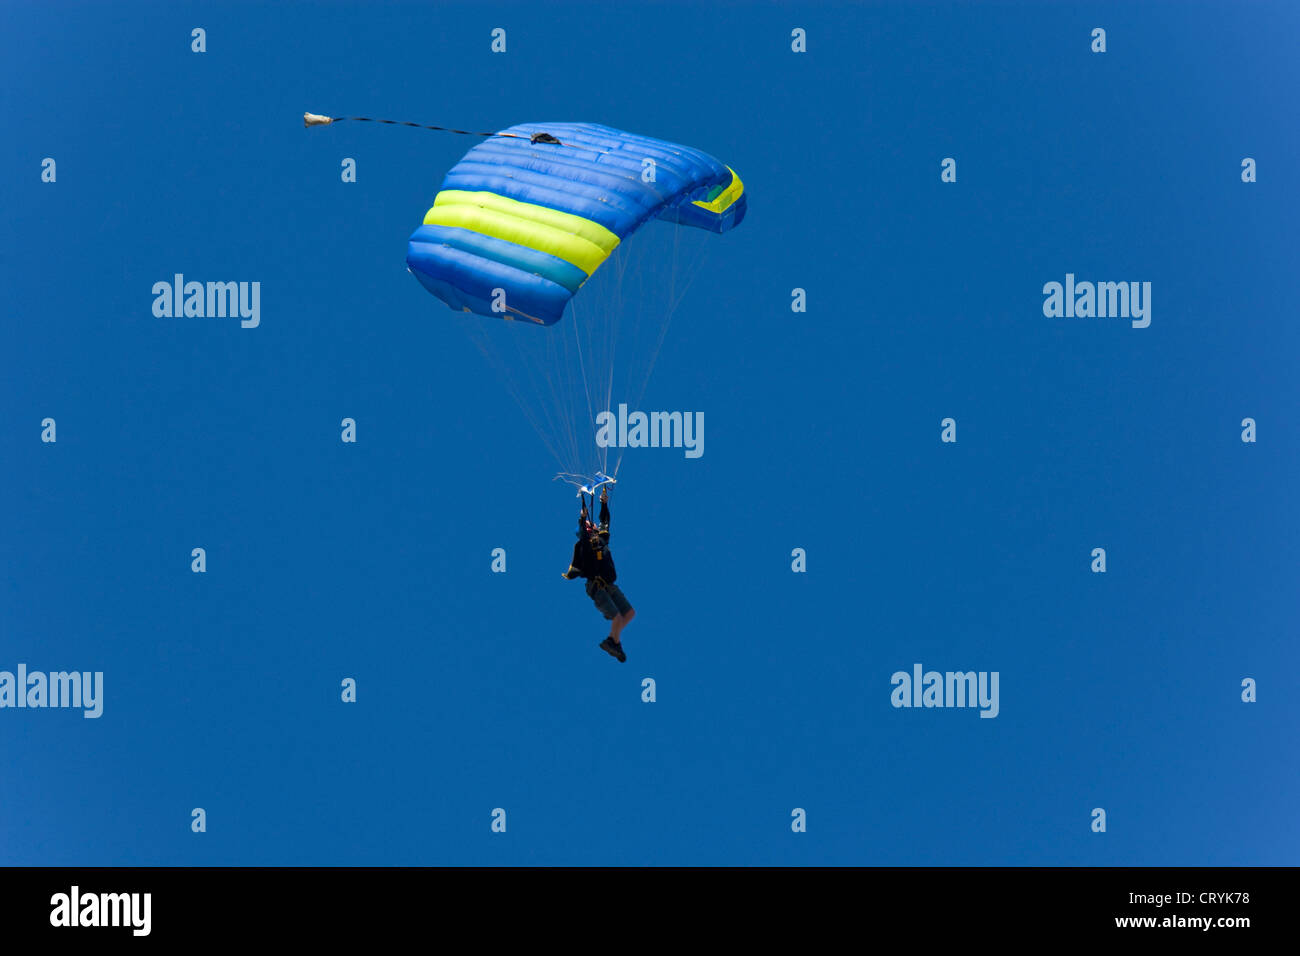 Le parachutisme saut en tandem Banque D'Images